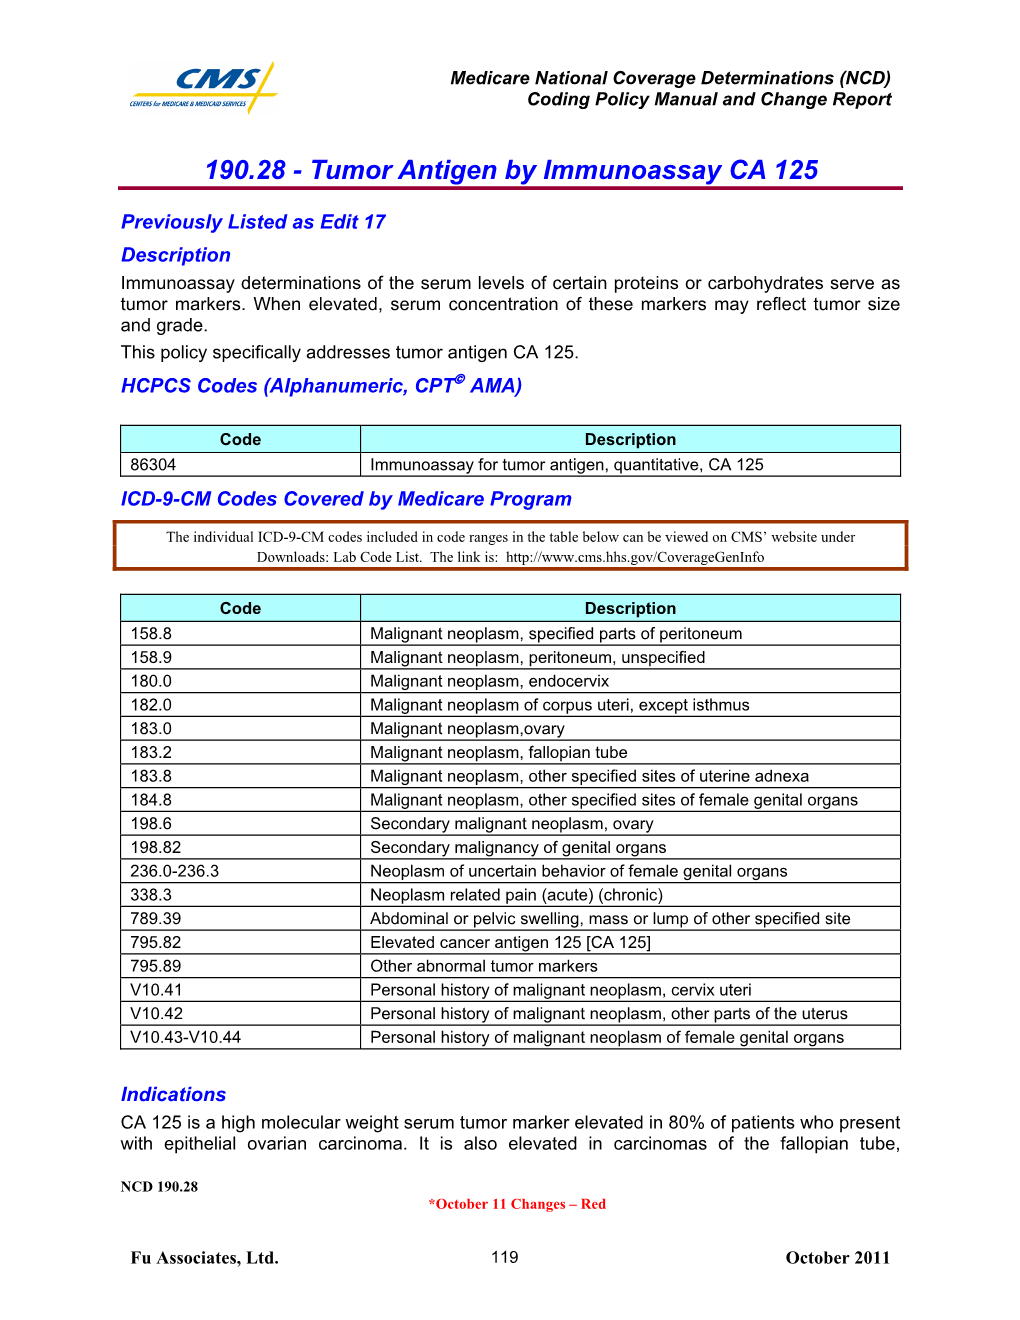 190.28 - Tumor Antigen by Immunoassay CA 125